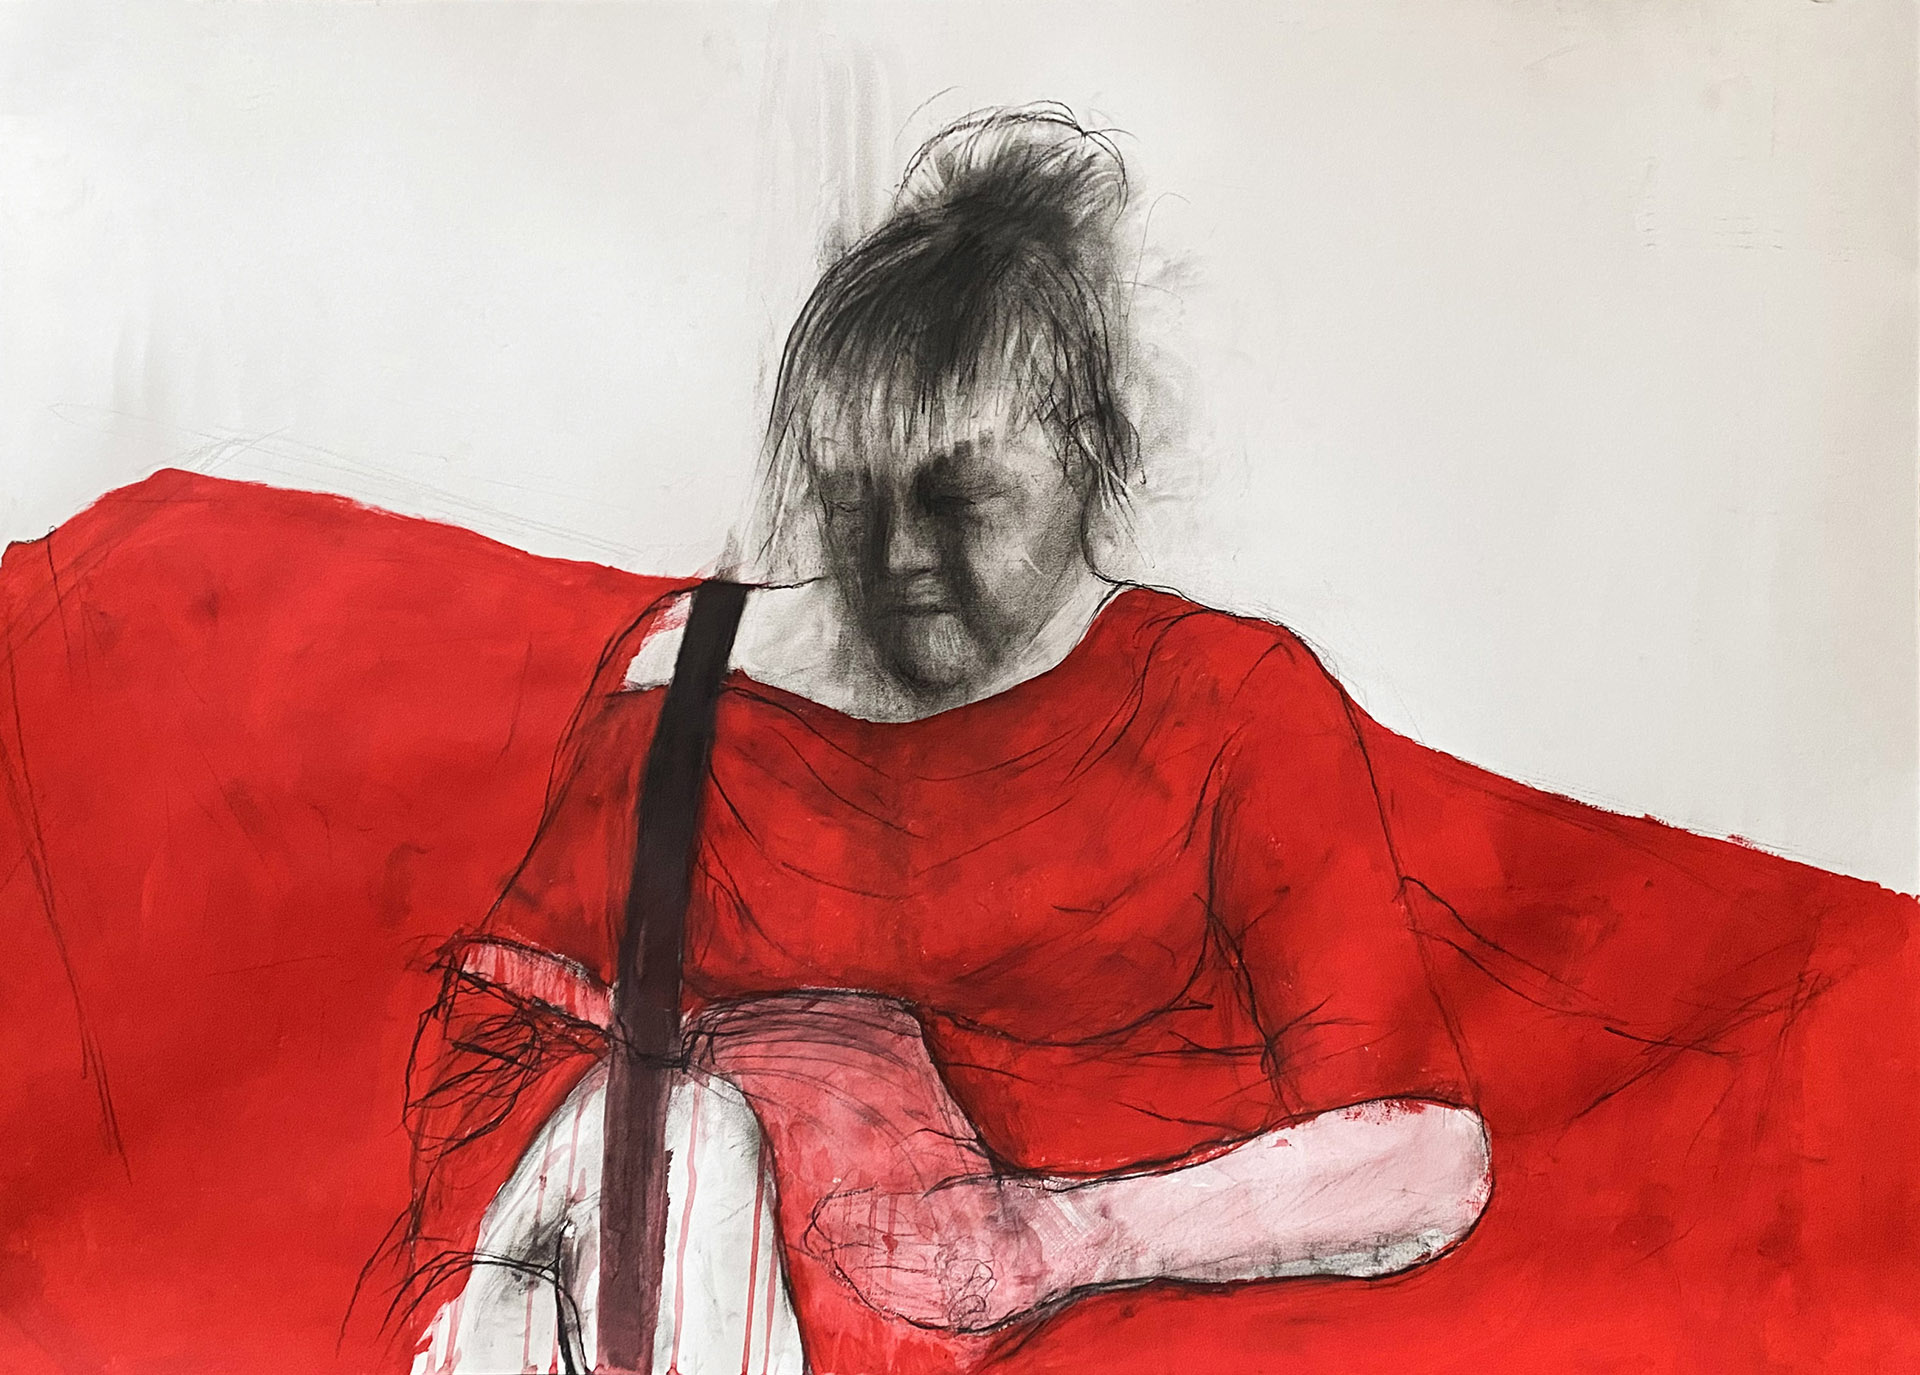 Rysunek przedstawia postać na biało czerwonym tle, wykonany węglem oraz farbą akrylową na papierze o wymiarach 100 x 70 cm